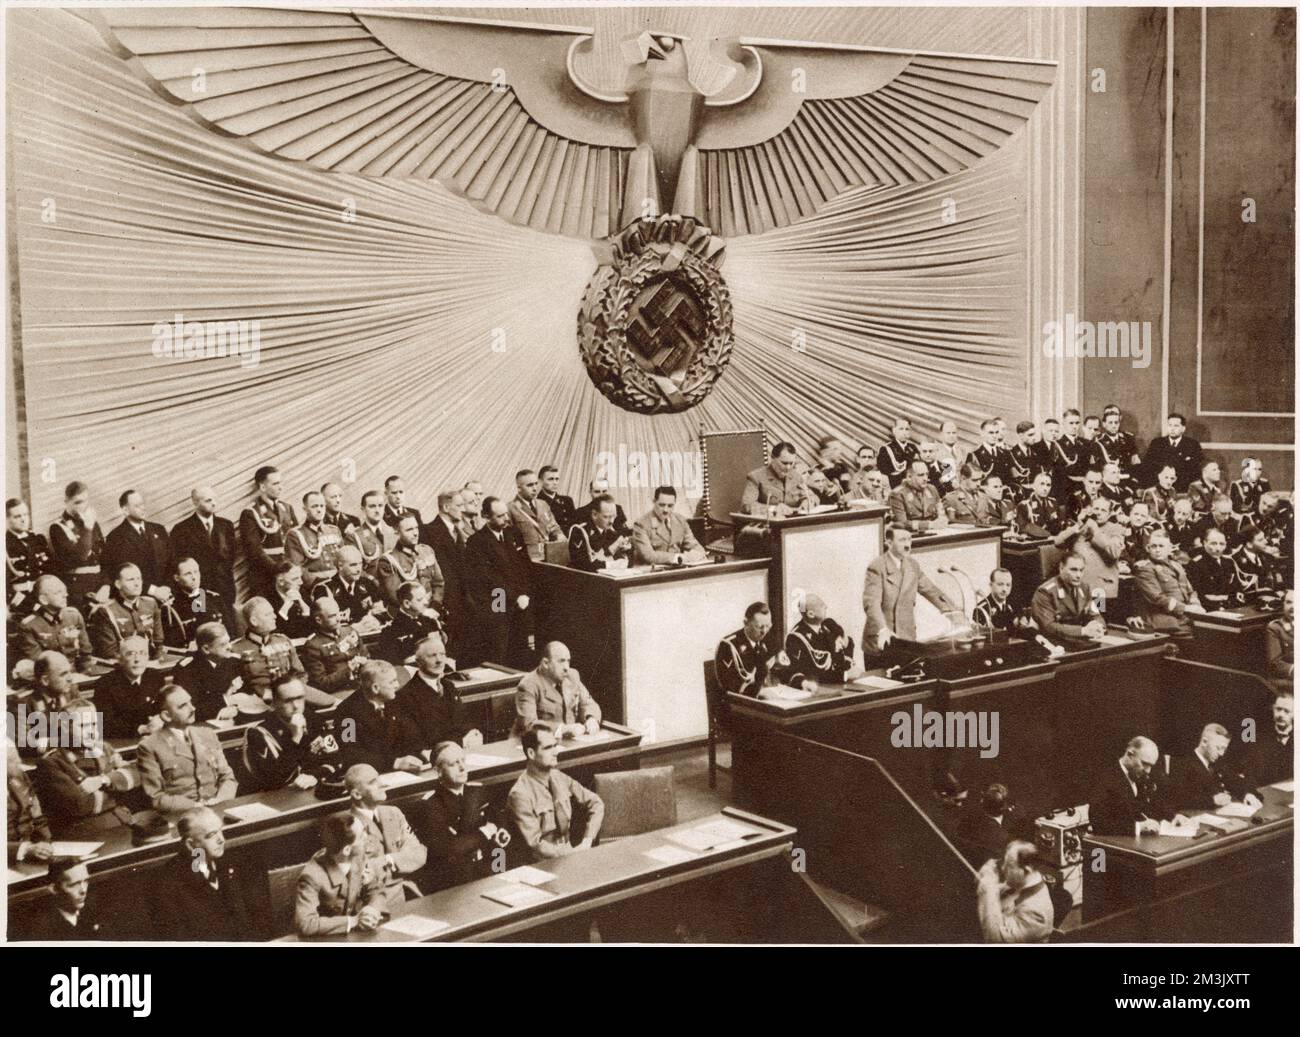 Adolf Hitler auf der 1. Tagung des Großen Deutschen Reichstags in der Kroll-Oper, Berlin, 30. Januar 1939. Der riesige Adler im Hintergrund ist repräsentativ für die Kontrolle des Reichstags durch die Nazis und die Macht des „Führers“ Adolf Hitler. Stockfoto